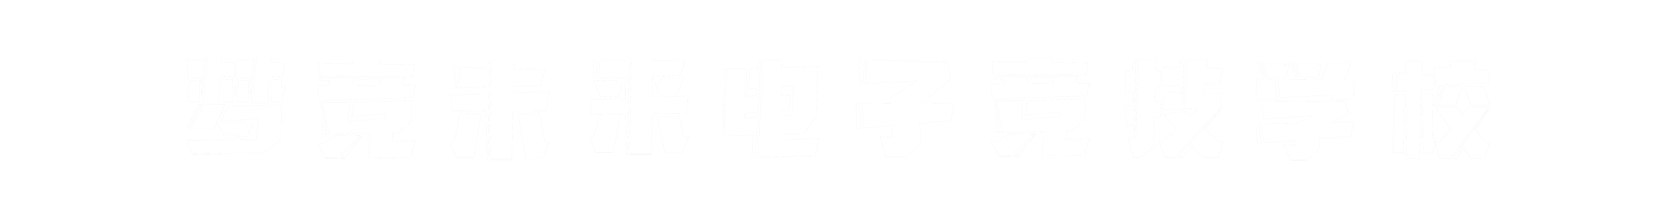 梦竞未来兰州banner字